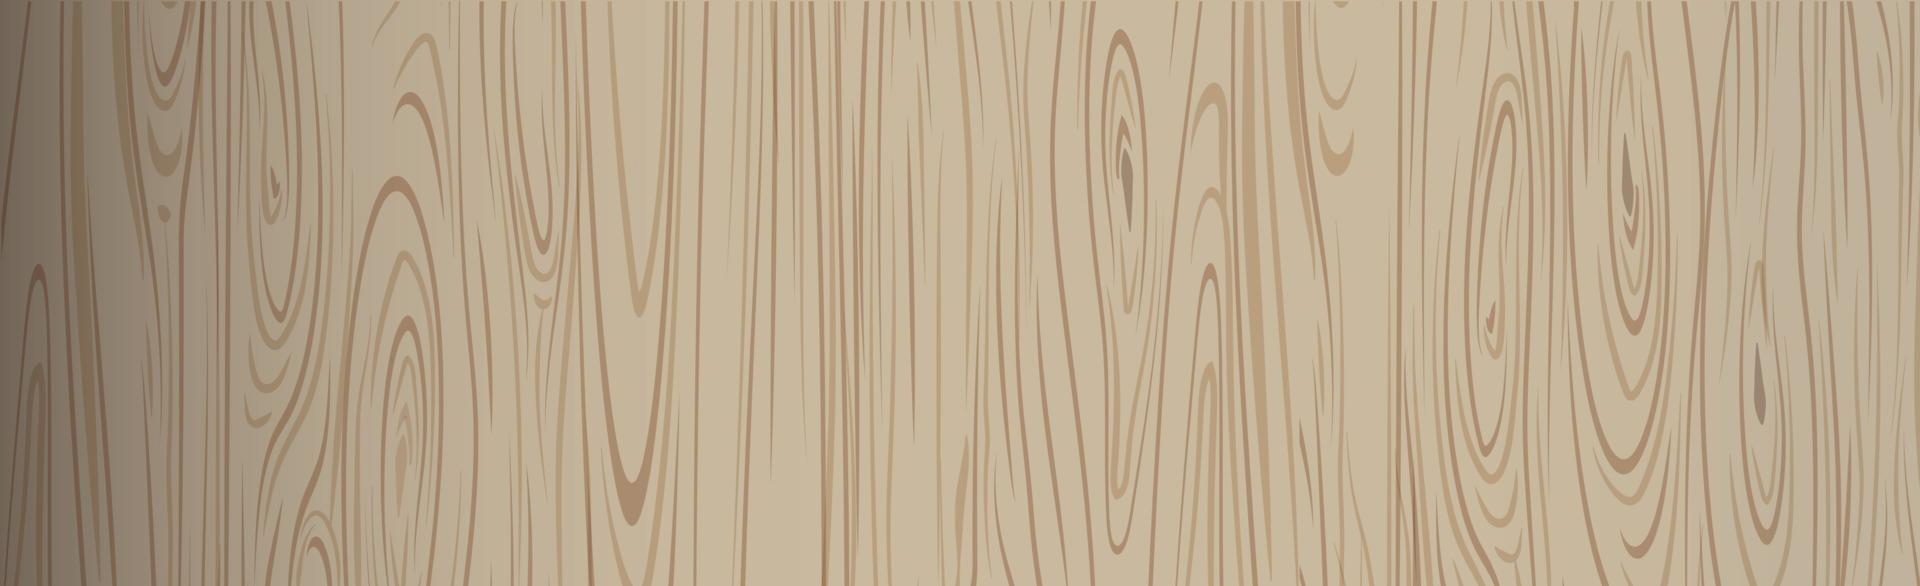 patrón de textura realista de madera oscura, fondo - vector